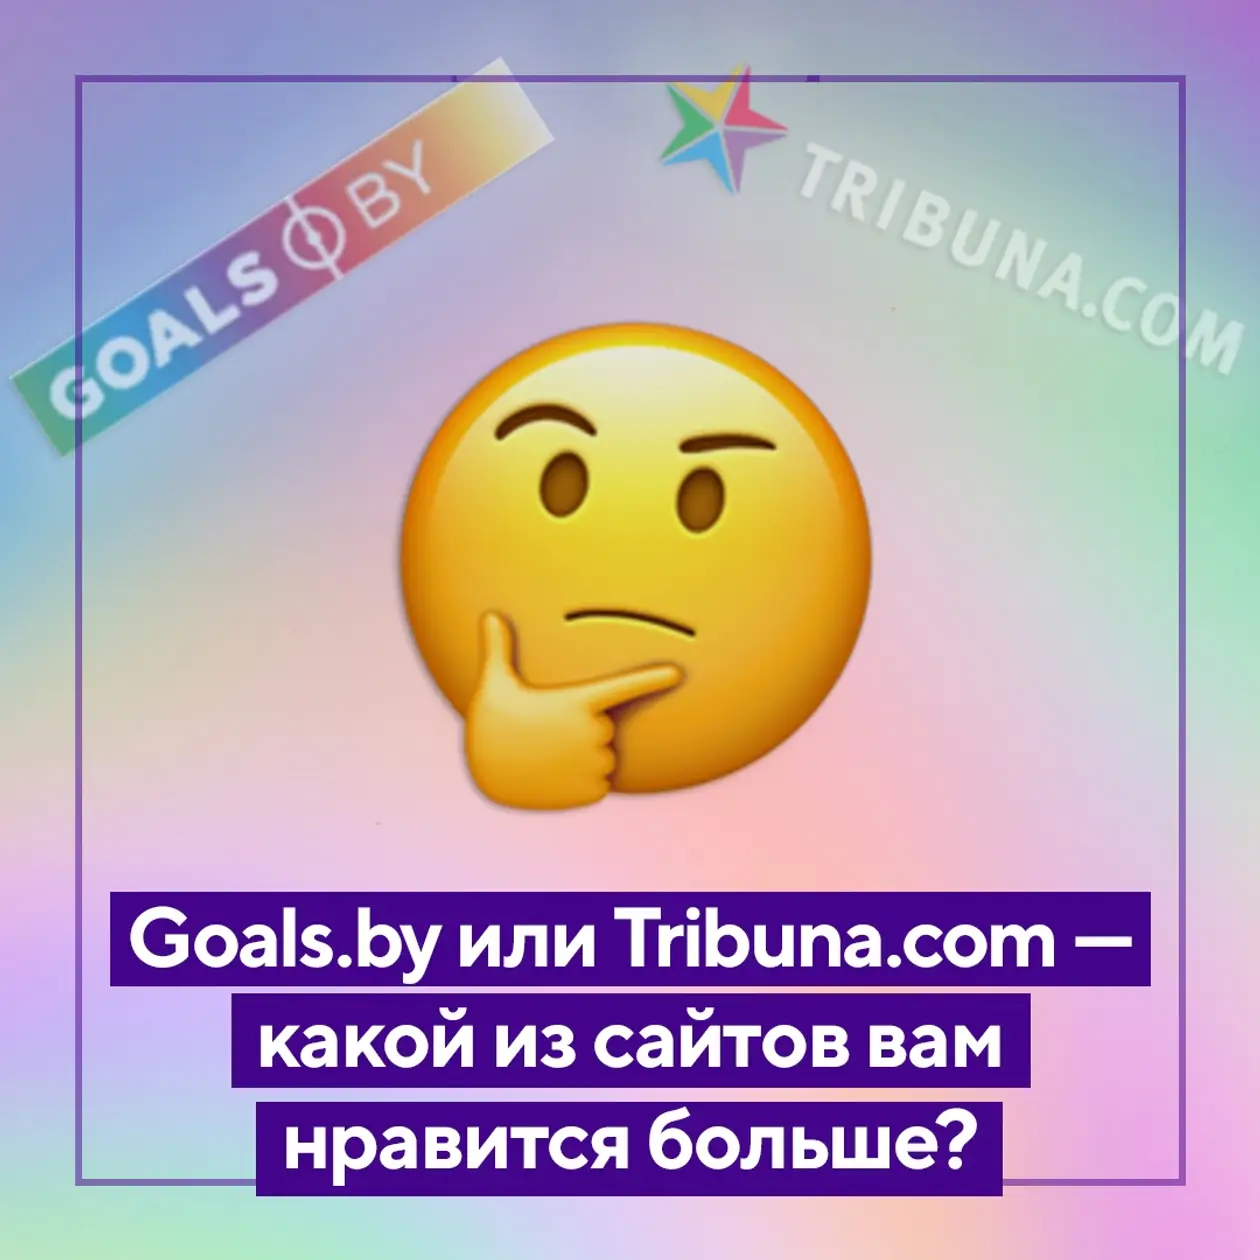 Вопрос дня. Tribuna.com или Goals.by – какой из сайтов вам нравится больше?